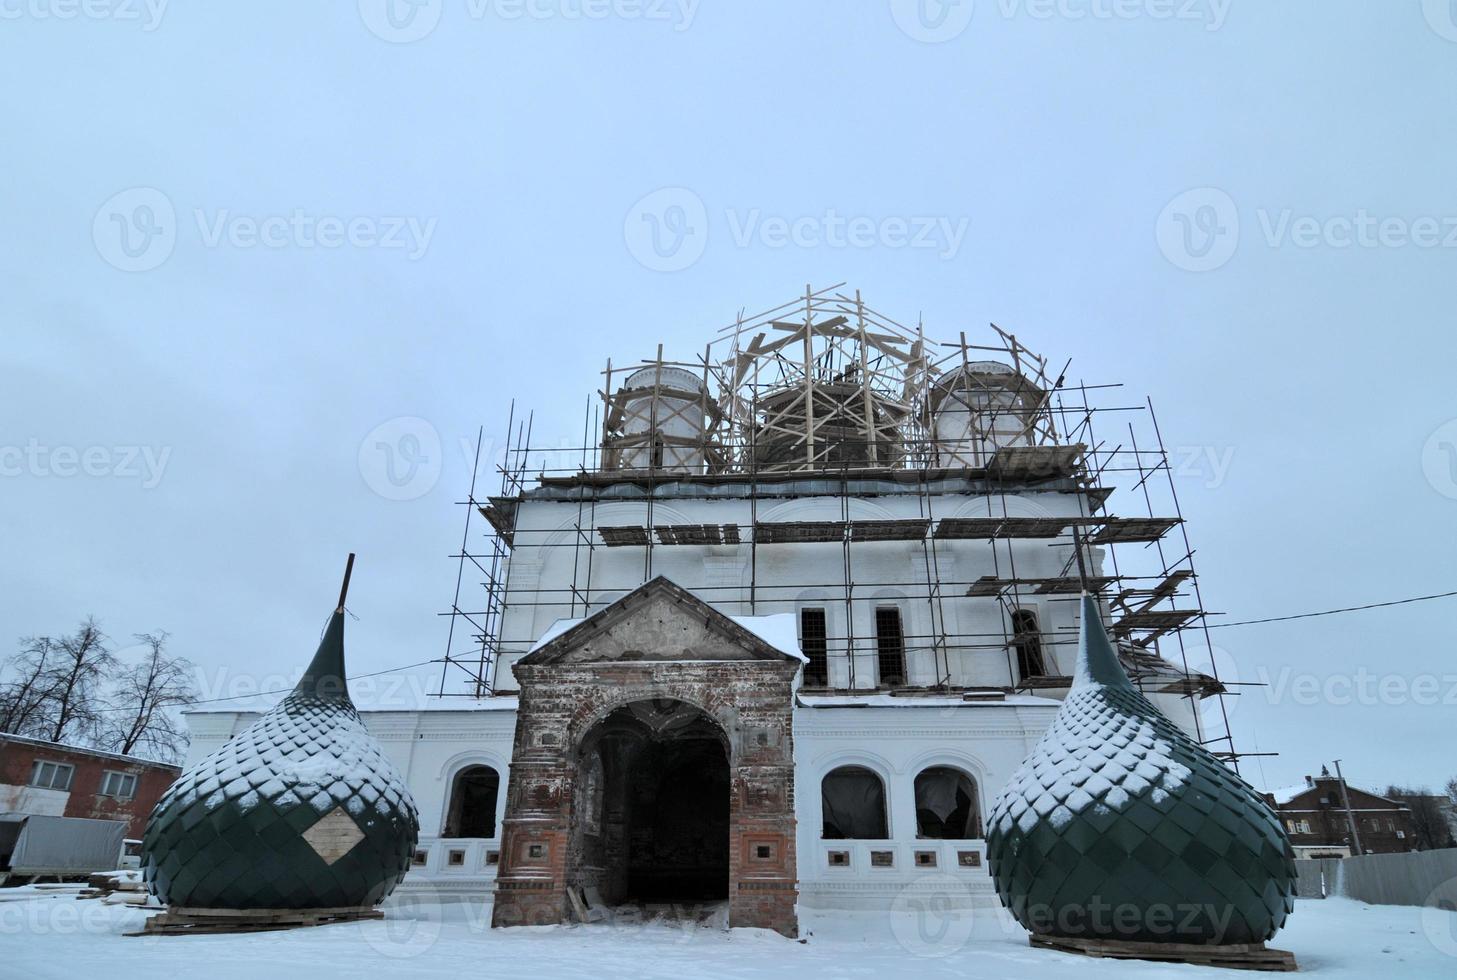 Himmelfahrtskirche in Reparatur in Jaroslawl im goldenen Ring Russlands im Winter. foto